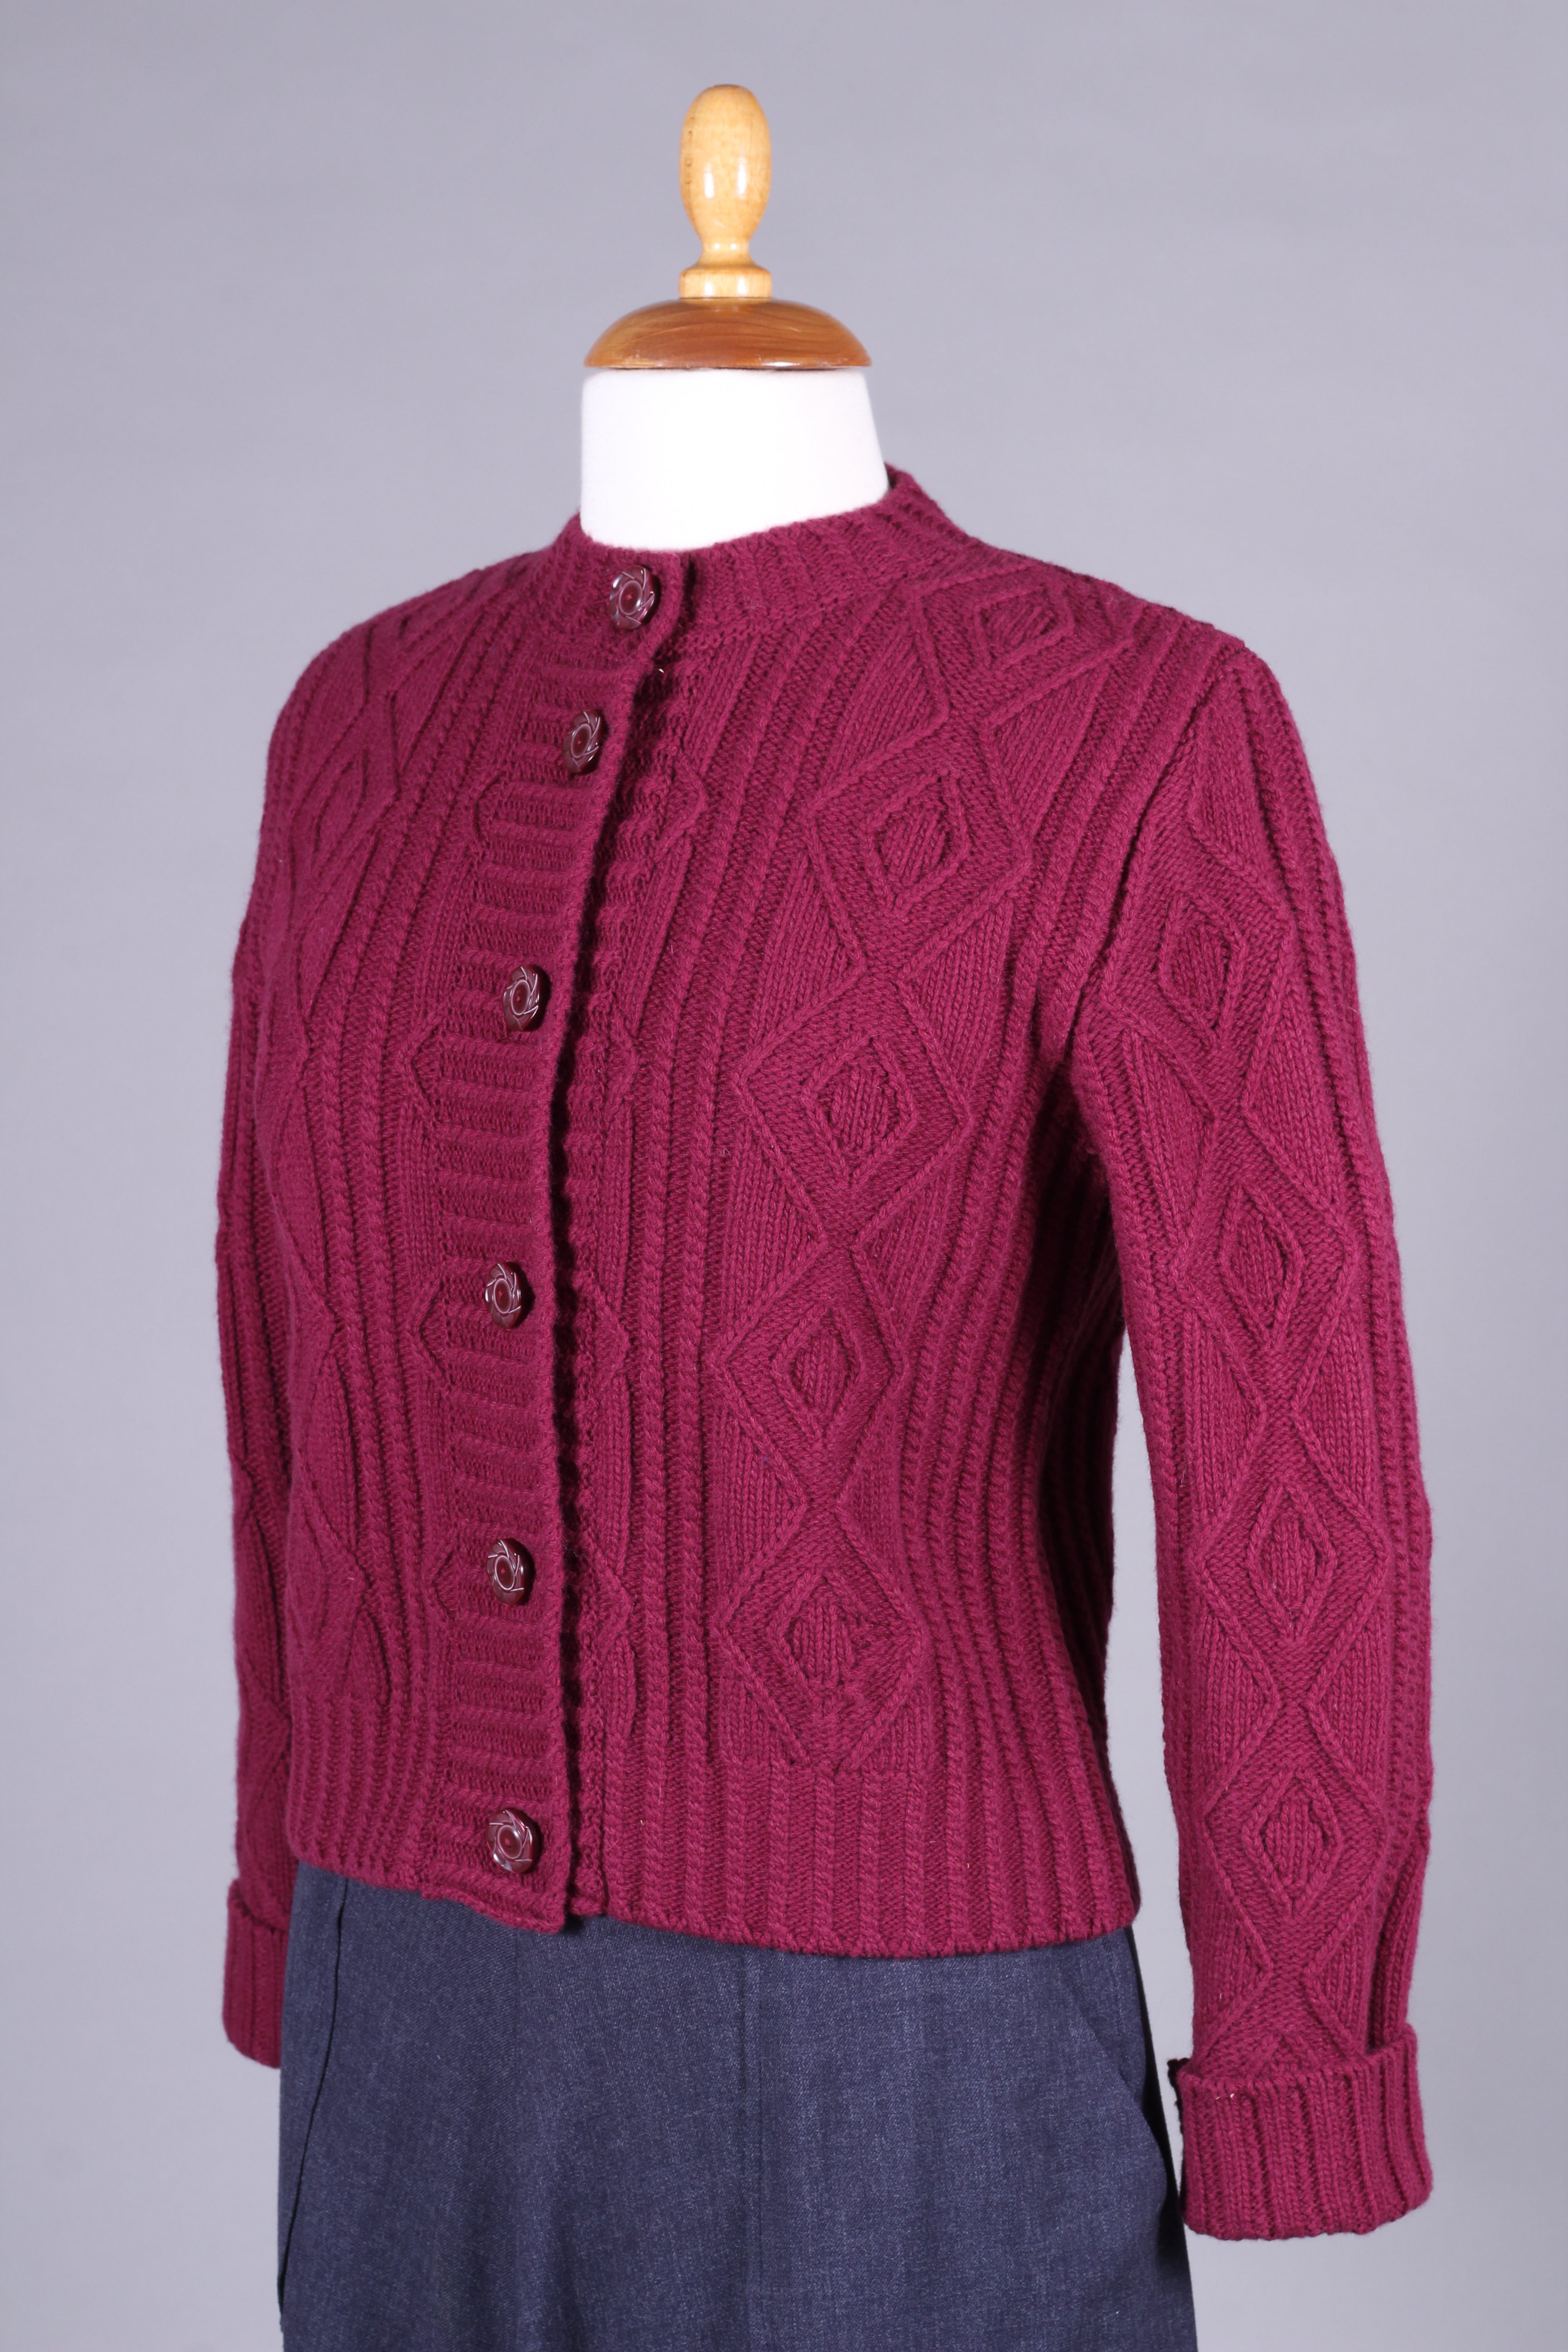 1940’er - tidlig 1960’er - Klassisk vintage style cardigan - Bordeaux rød - Ingrid